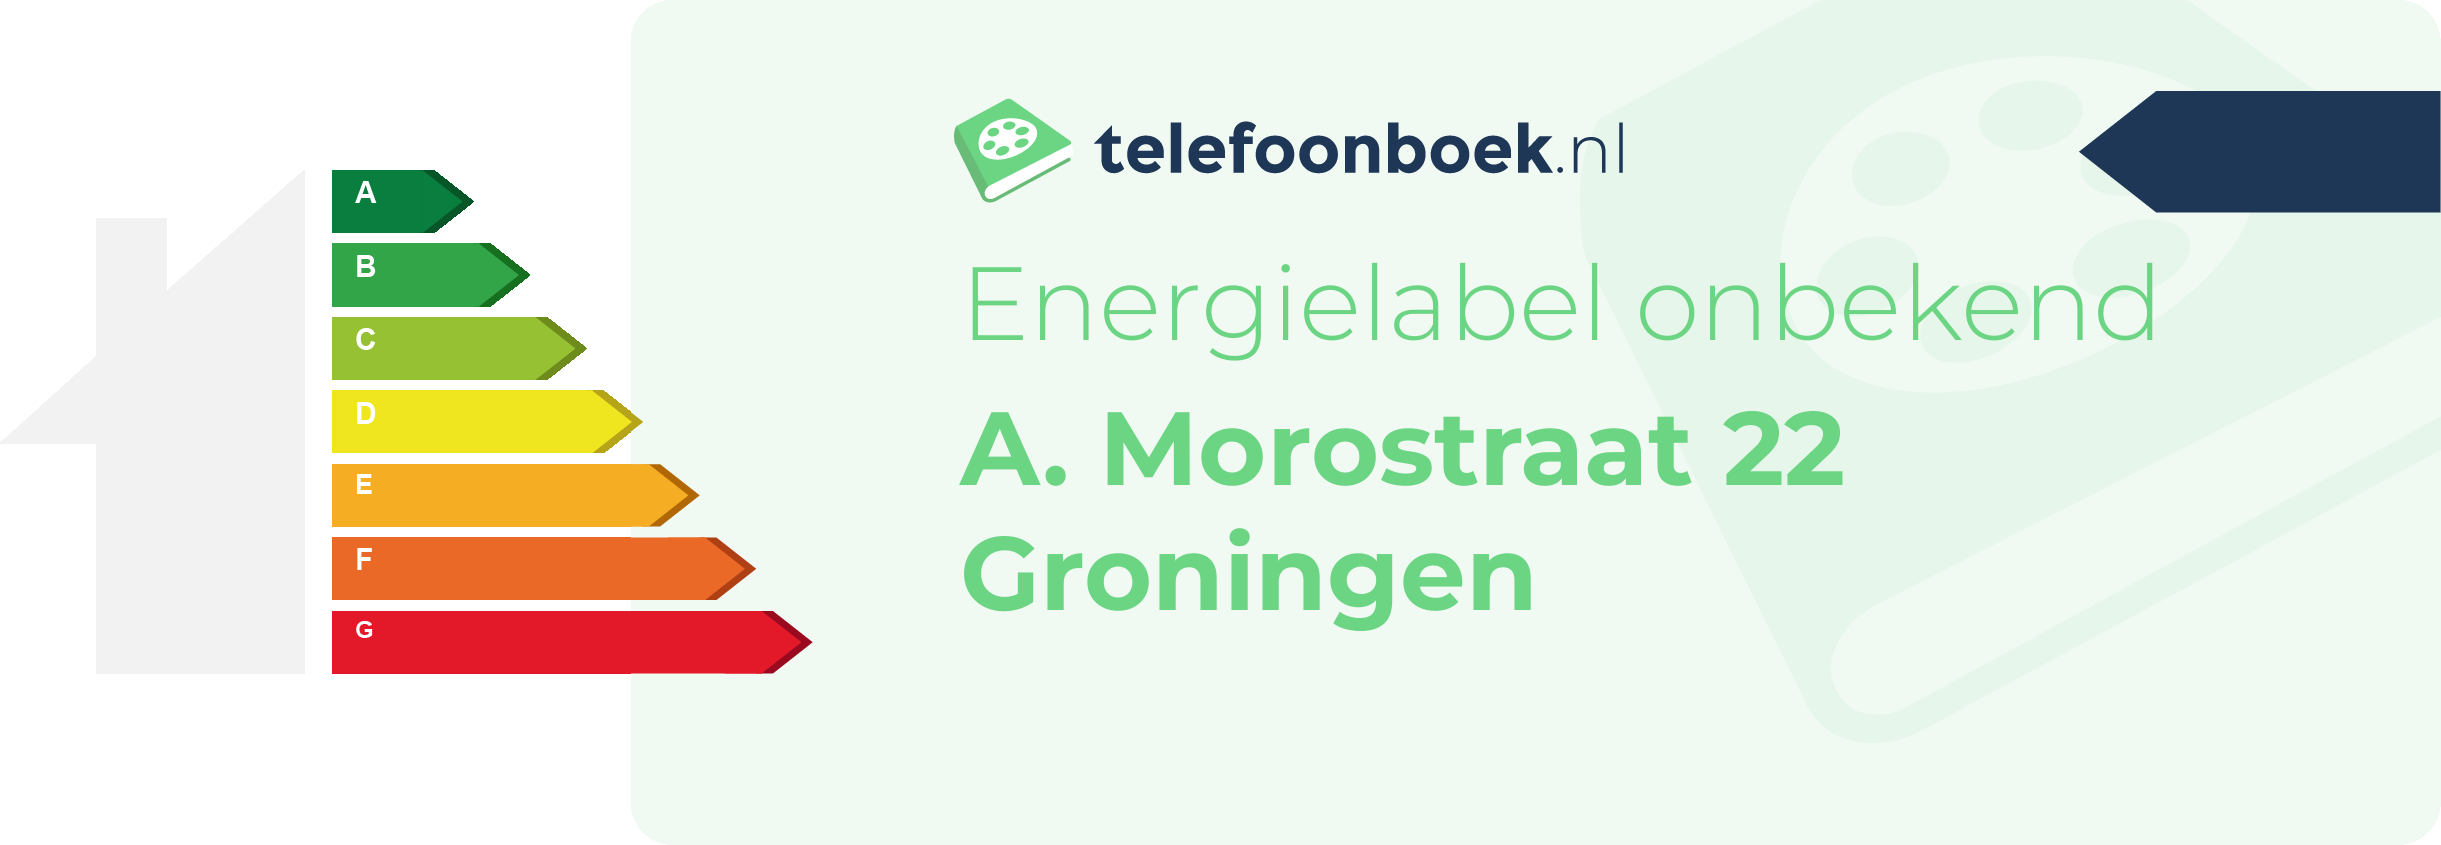 Energielabel A. Morostraat 22 Groningen